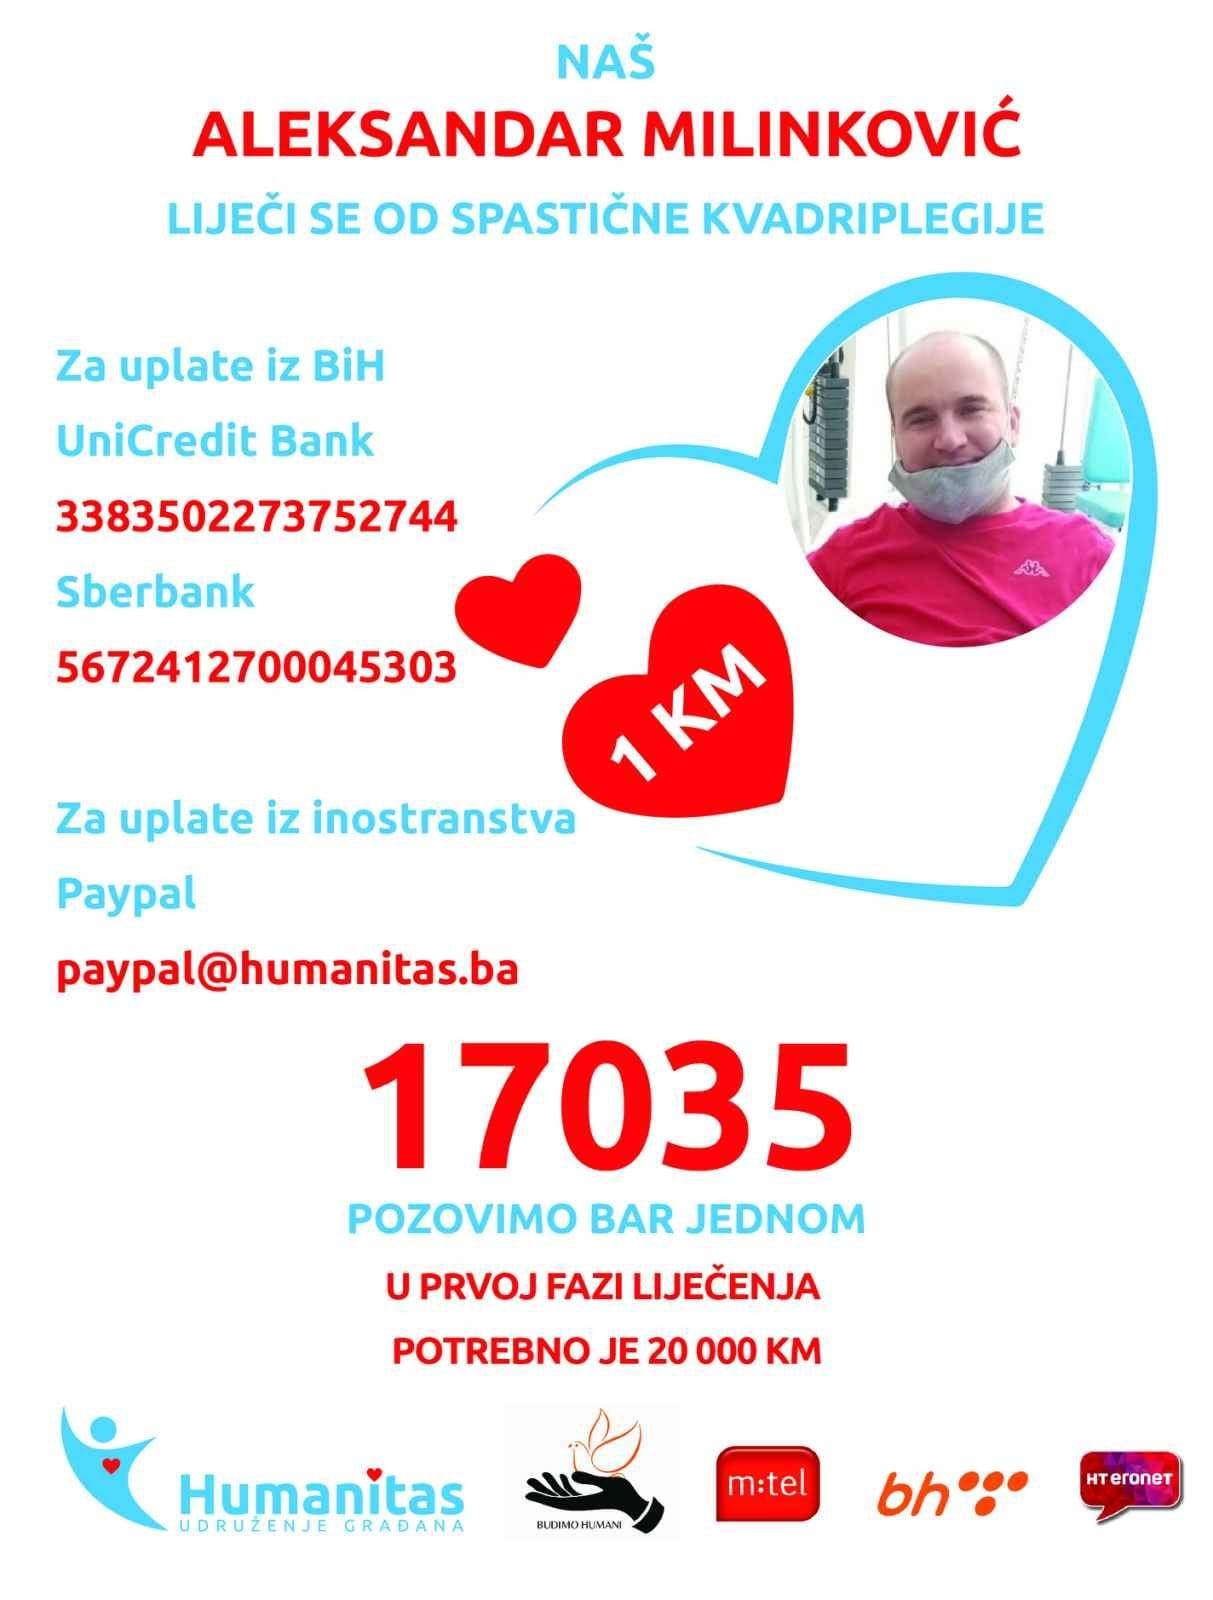  Pozovite 17035, darujte 1 KM za liječenje Aleksandra Milinkovića iz Banjaluke 